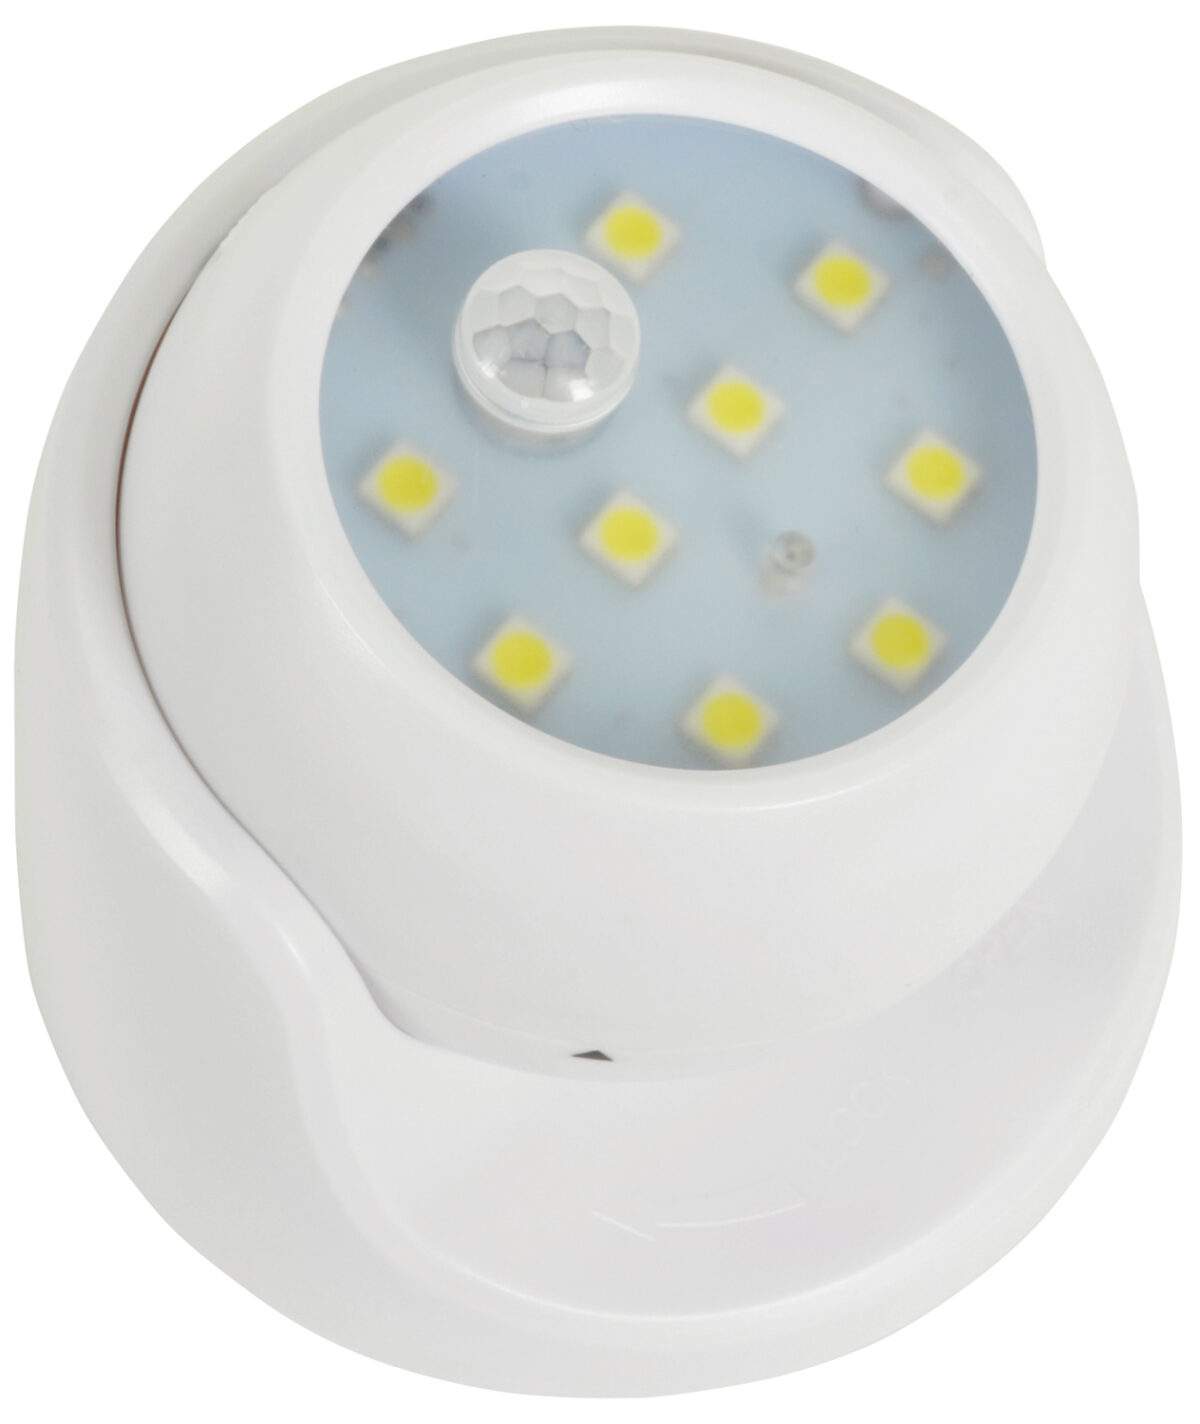 Ασύρματο LED Φωτάκι Με Αισθητήρα Κίνησης electronistas.gr